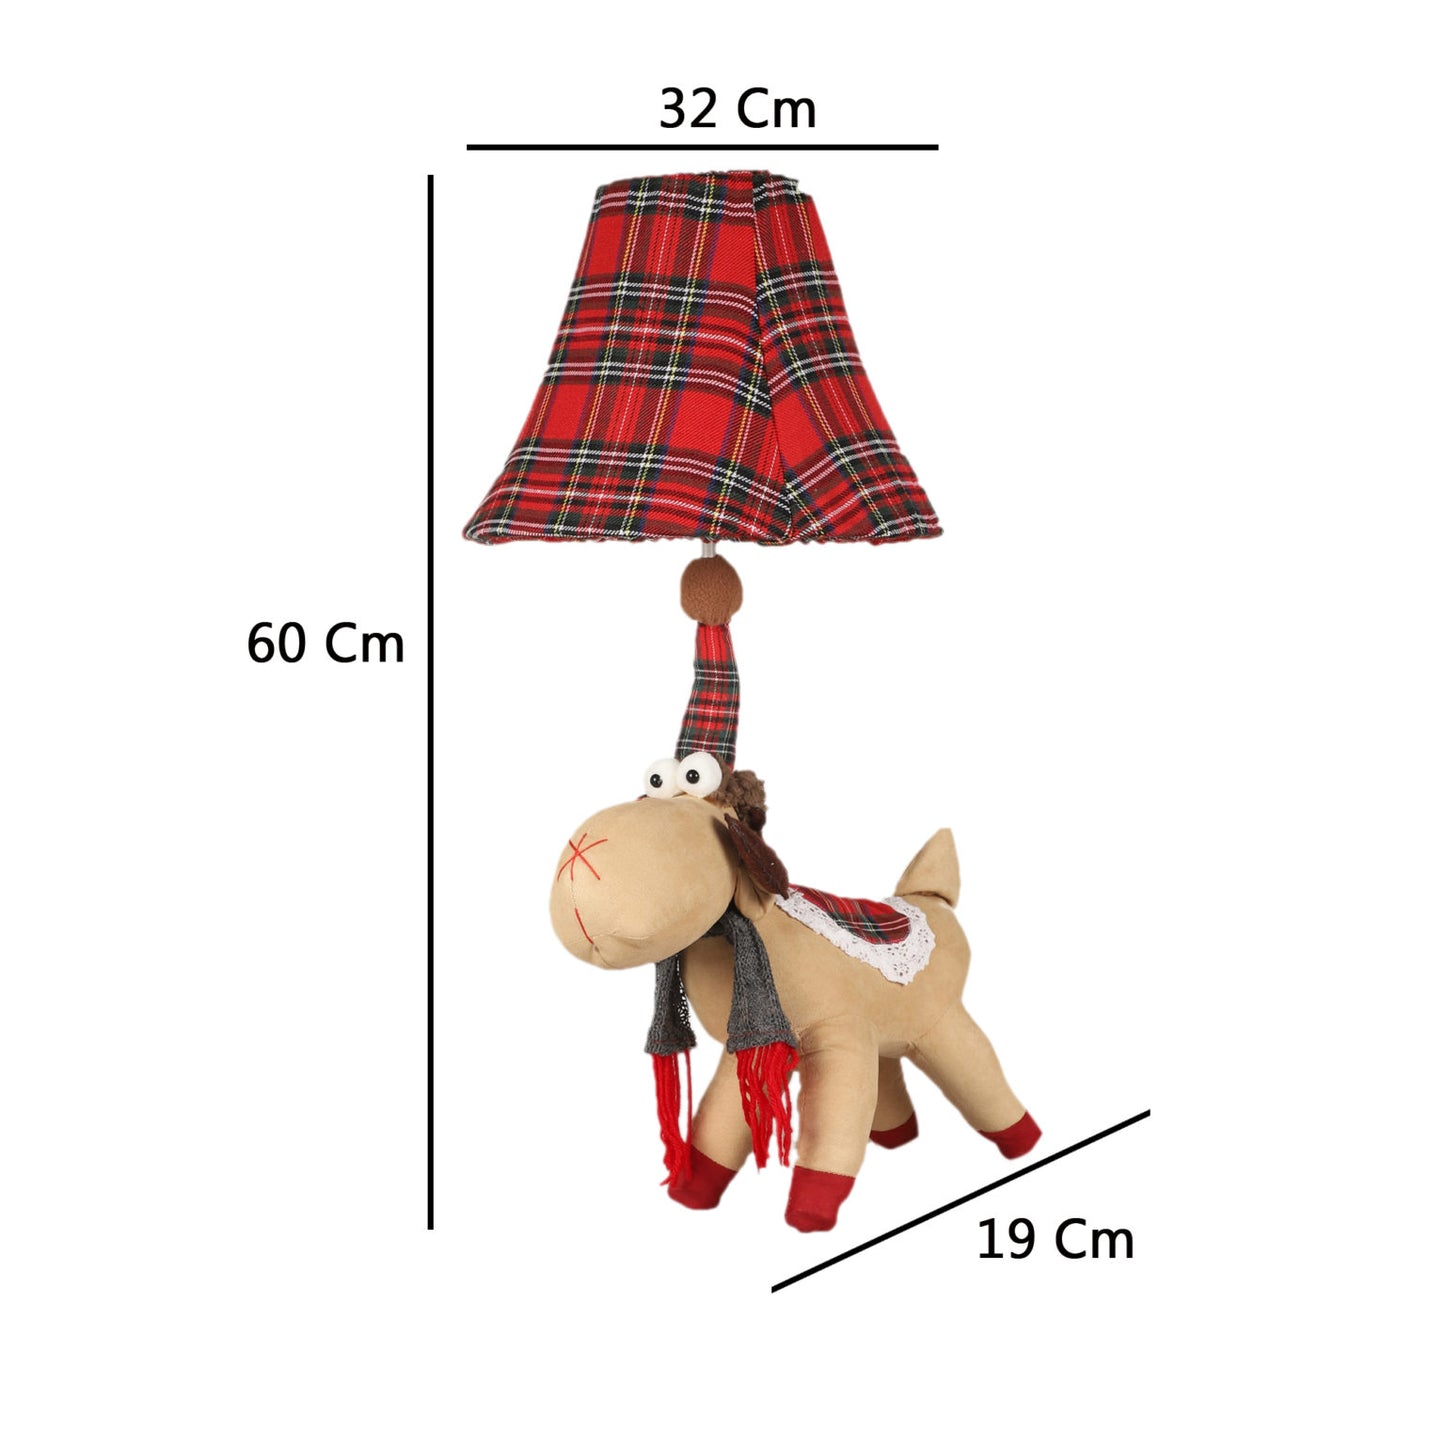 Reindeer Table Lamp